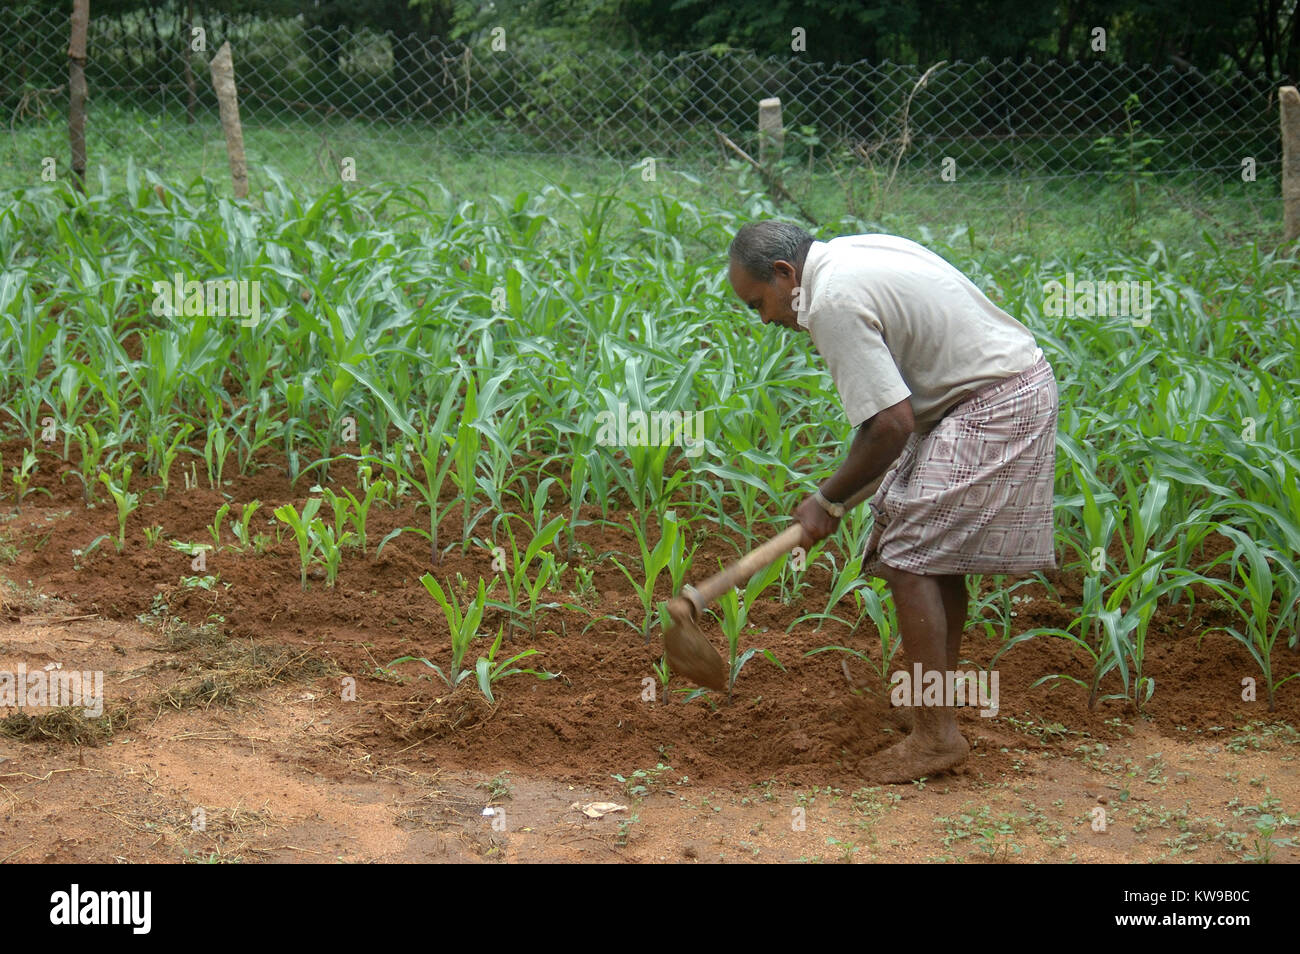 Il Tamil Nadu, India, circa 2009: uomo non identificato zappando erbacce attorno ad un raccolto di mais, circa 2009 in Tamil Nadu, India. Foto Stock